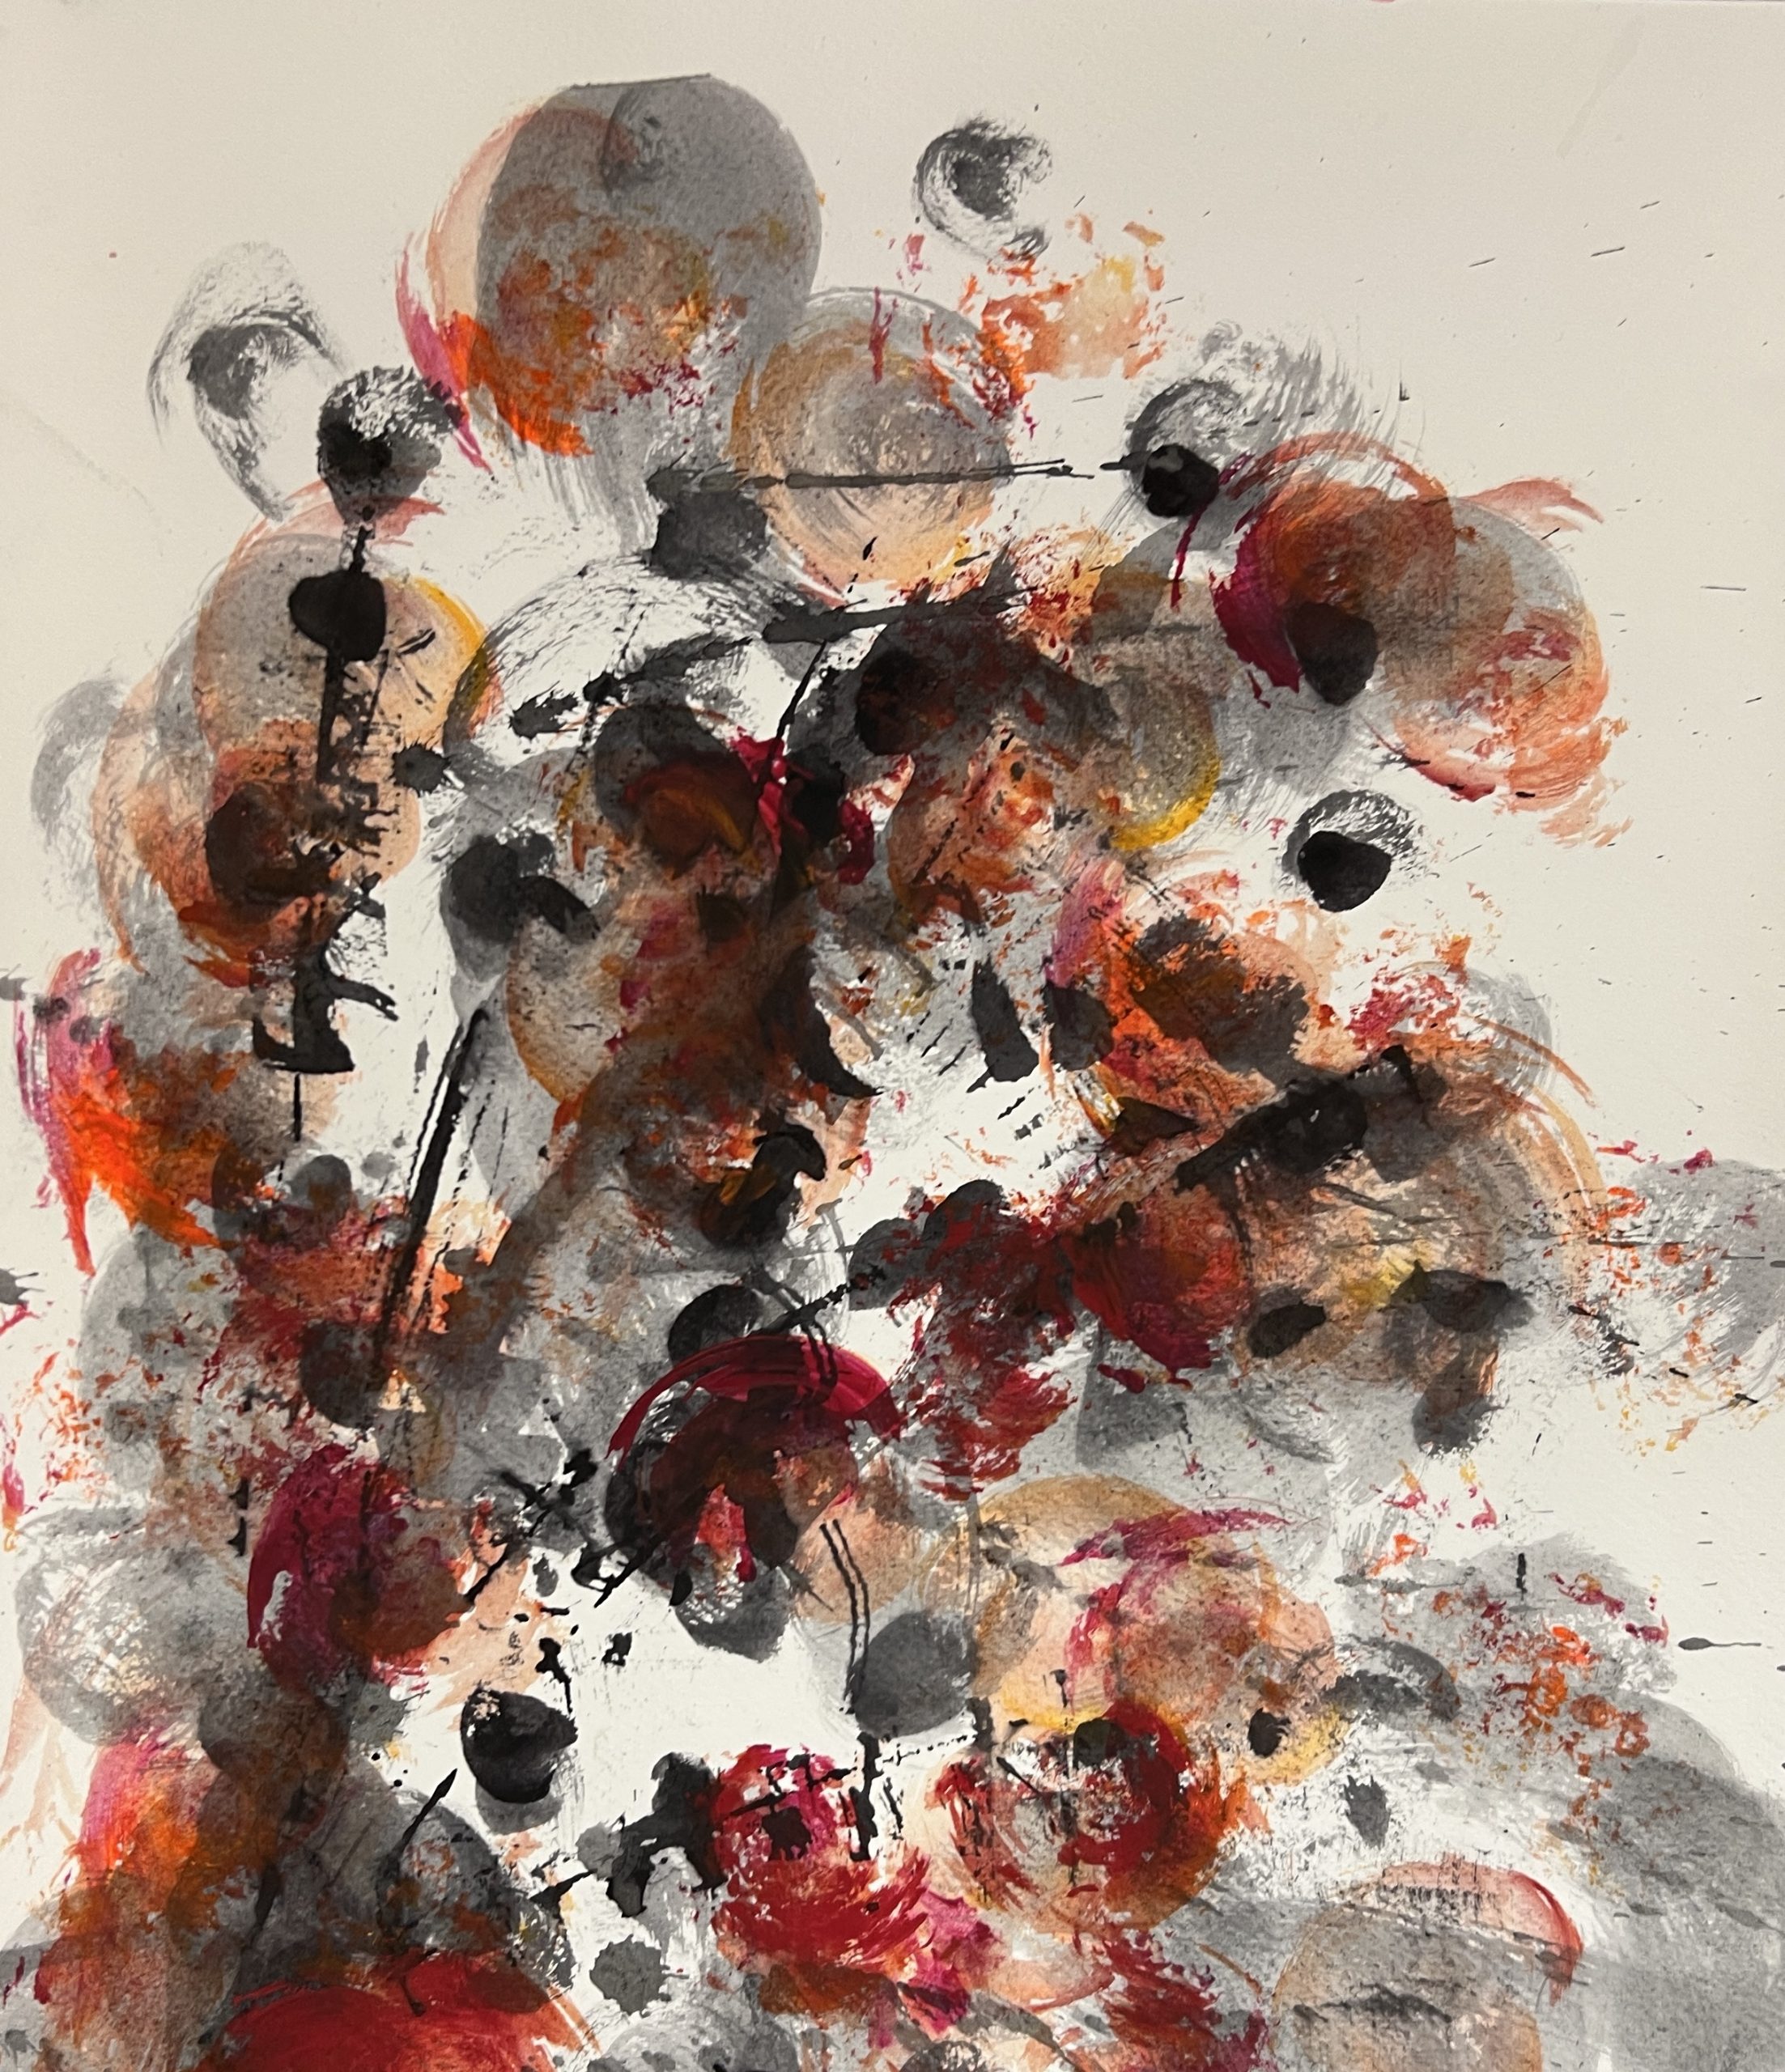 Harmoniske tone i tone maleri med sort og rød tusch som danner et organisk mønster.
Maleriet er på papir og indrammet.